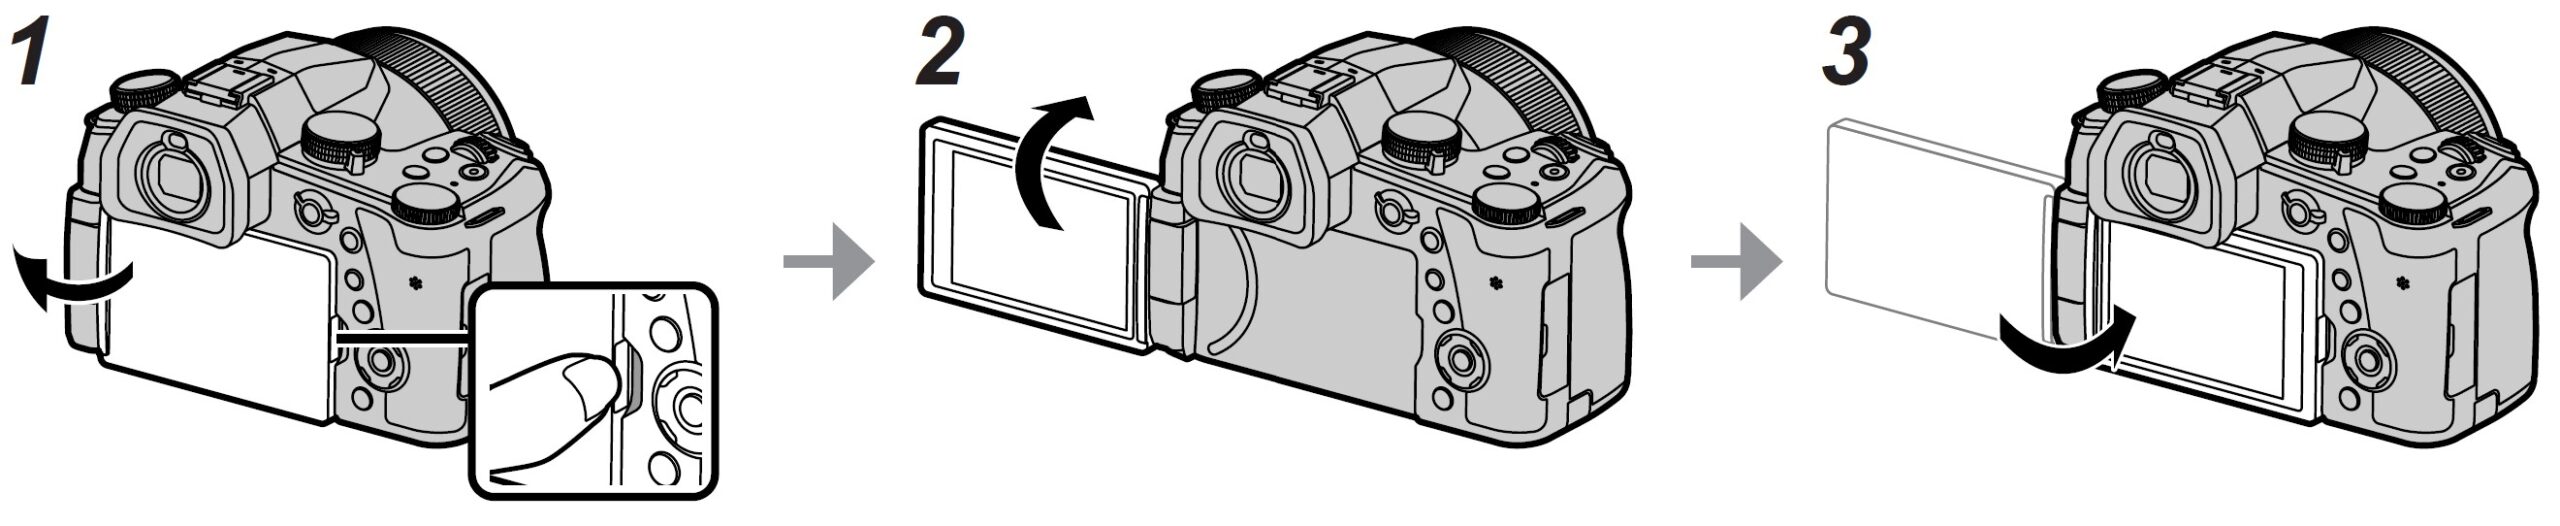 Panasonic-LUMIX-FZ1000-II-Digital-Camera-Owner-Manual-31